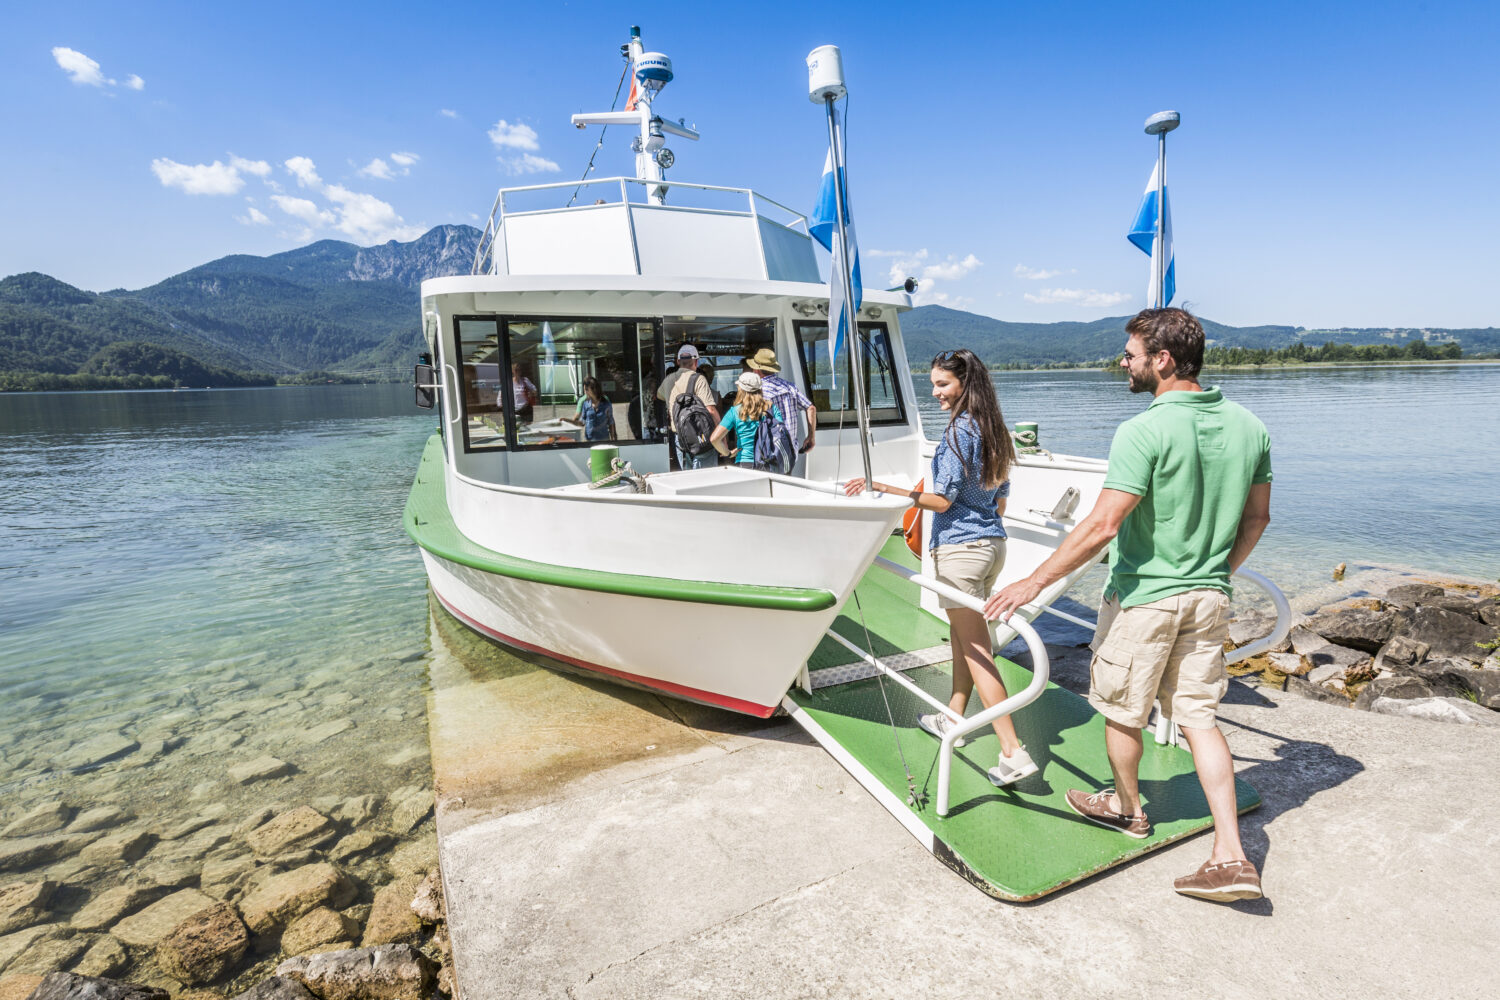 Schifffahrten und Freizeitaktivitäten machen den Urlaub in Oberbayern besonders attraktiv und erlebnisreich.